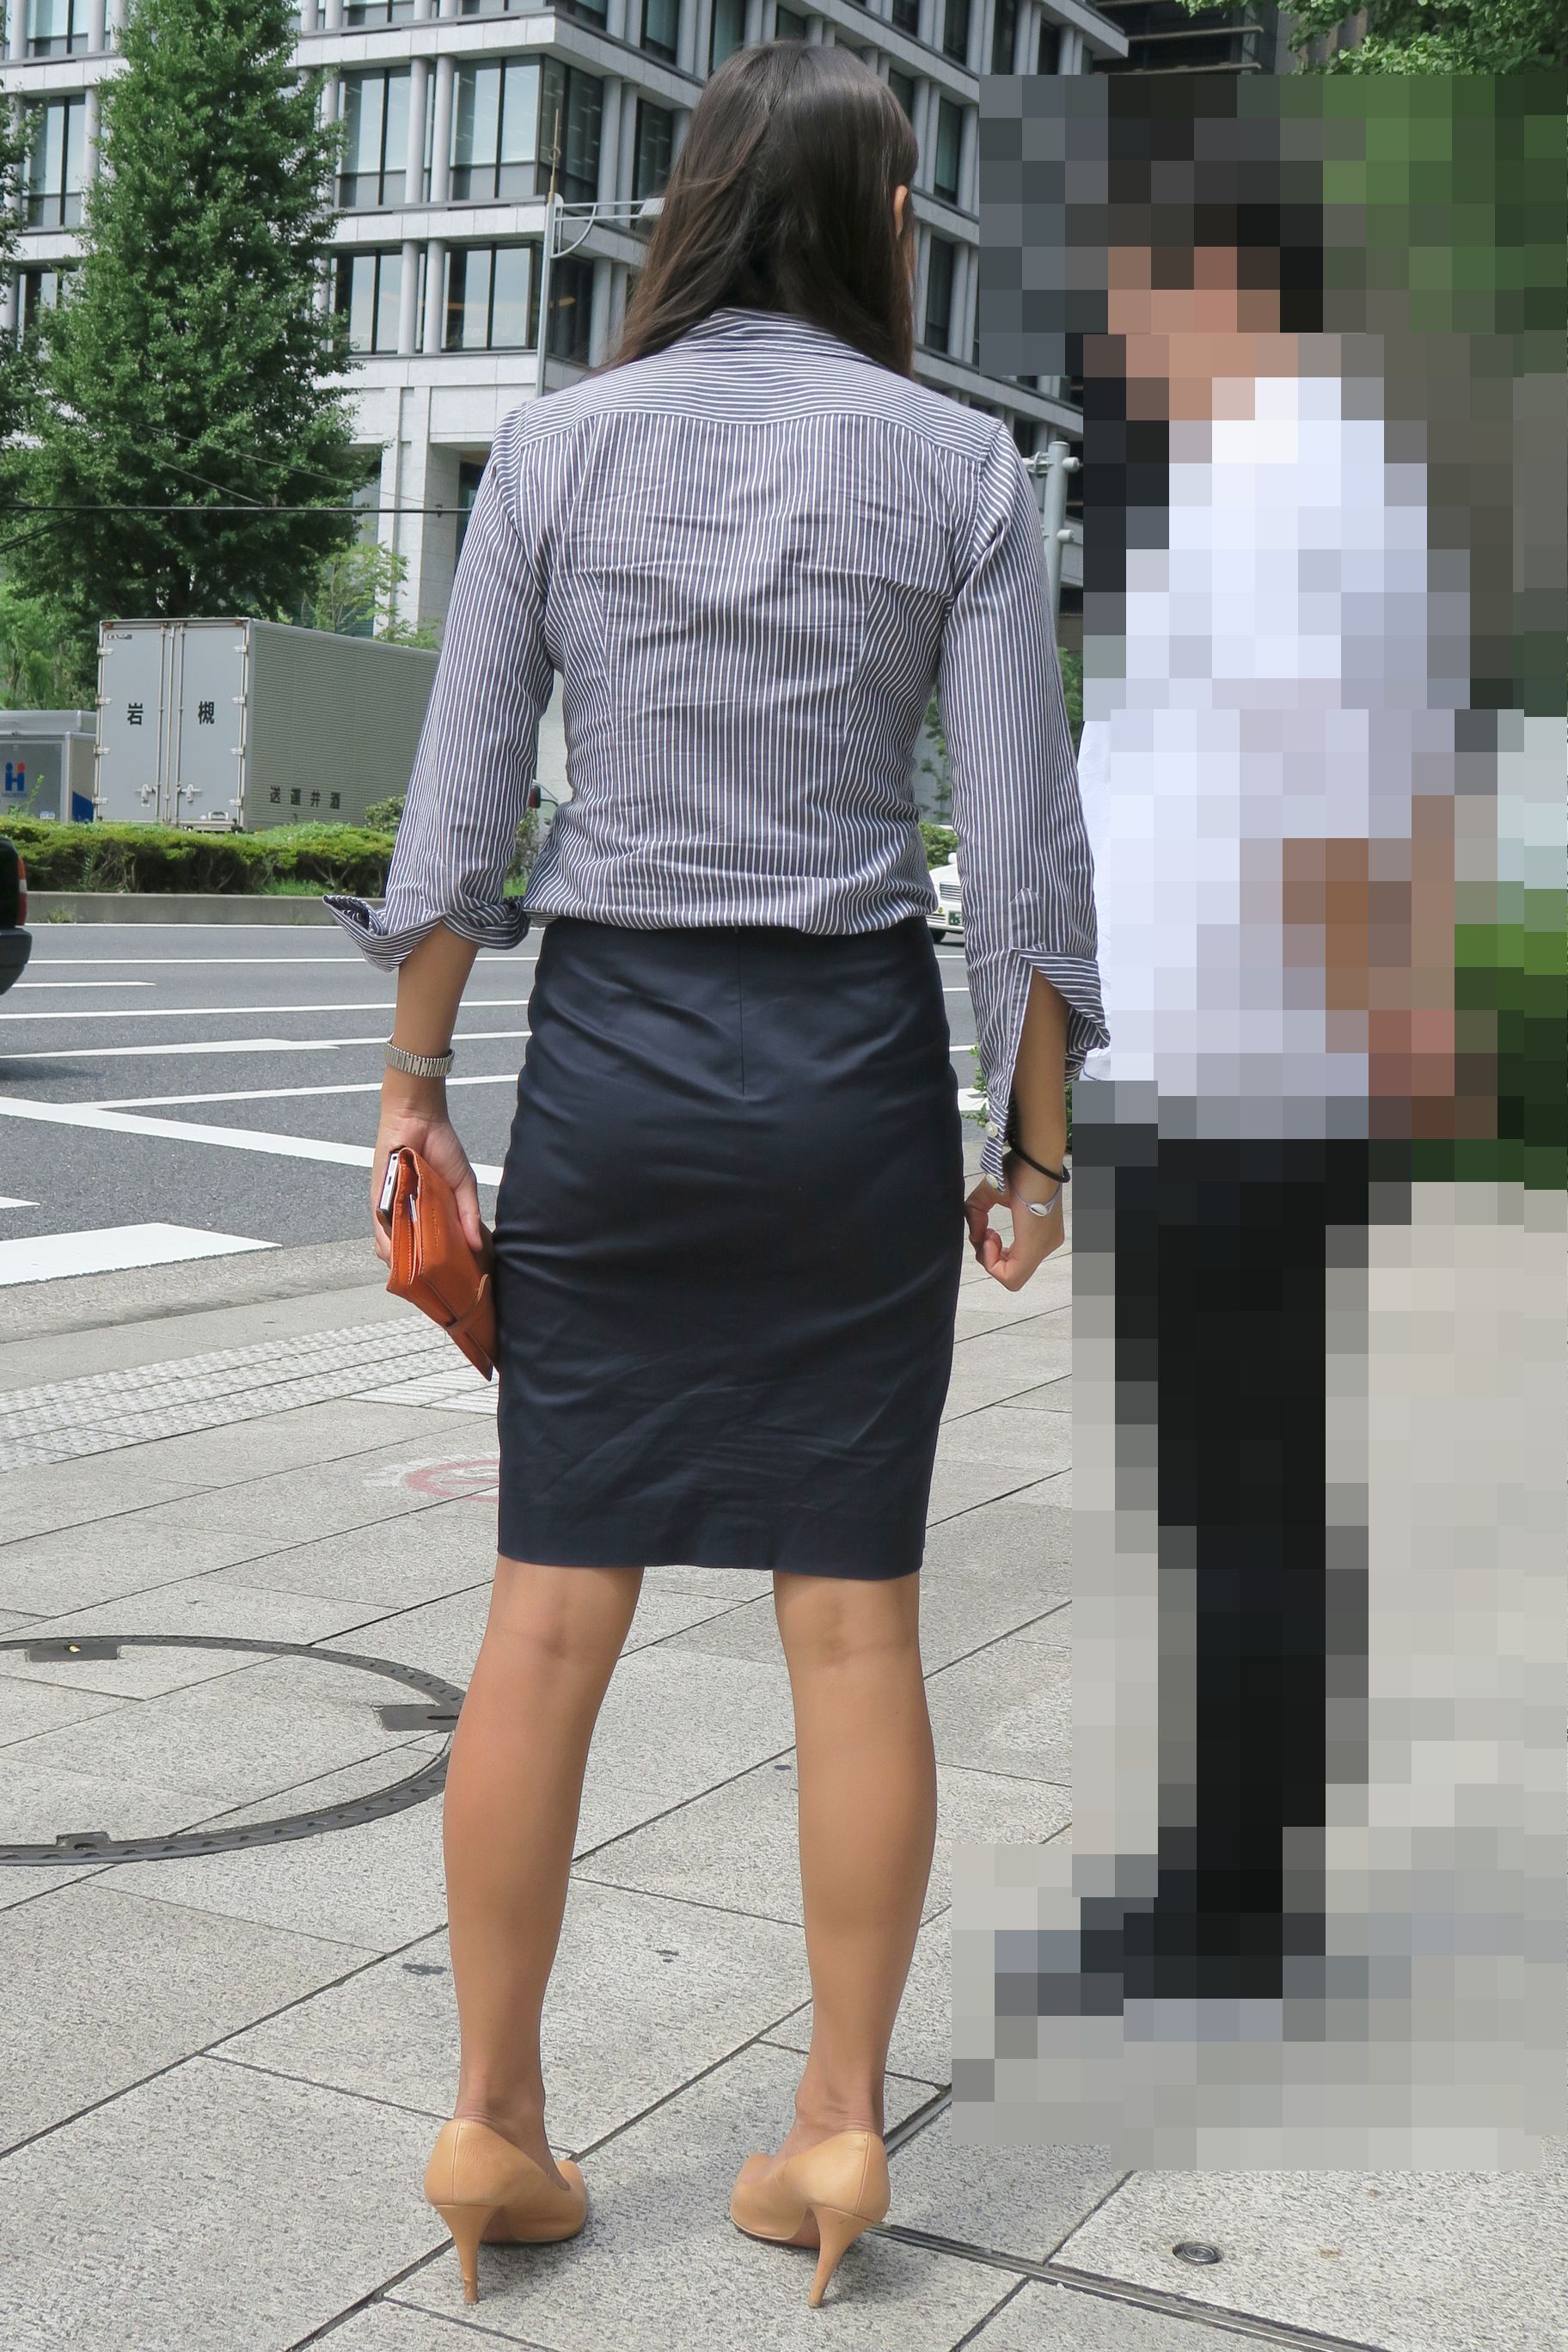 OLさんや就活女子のタイトスカートお尻を街撮りした素人エロ画像-190